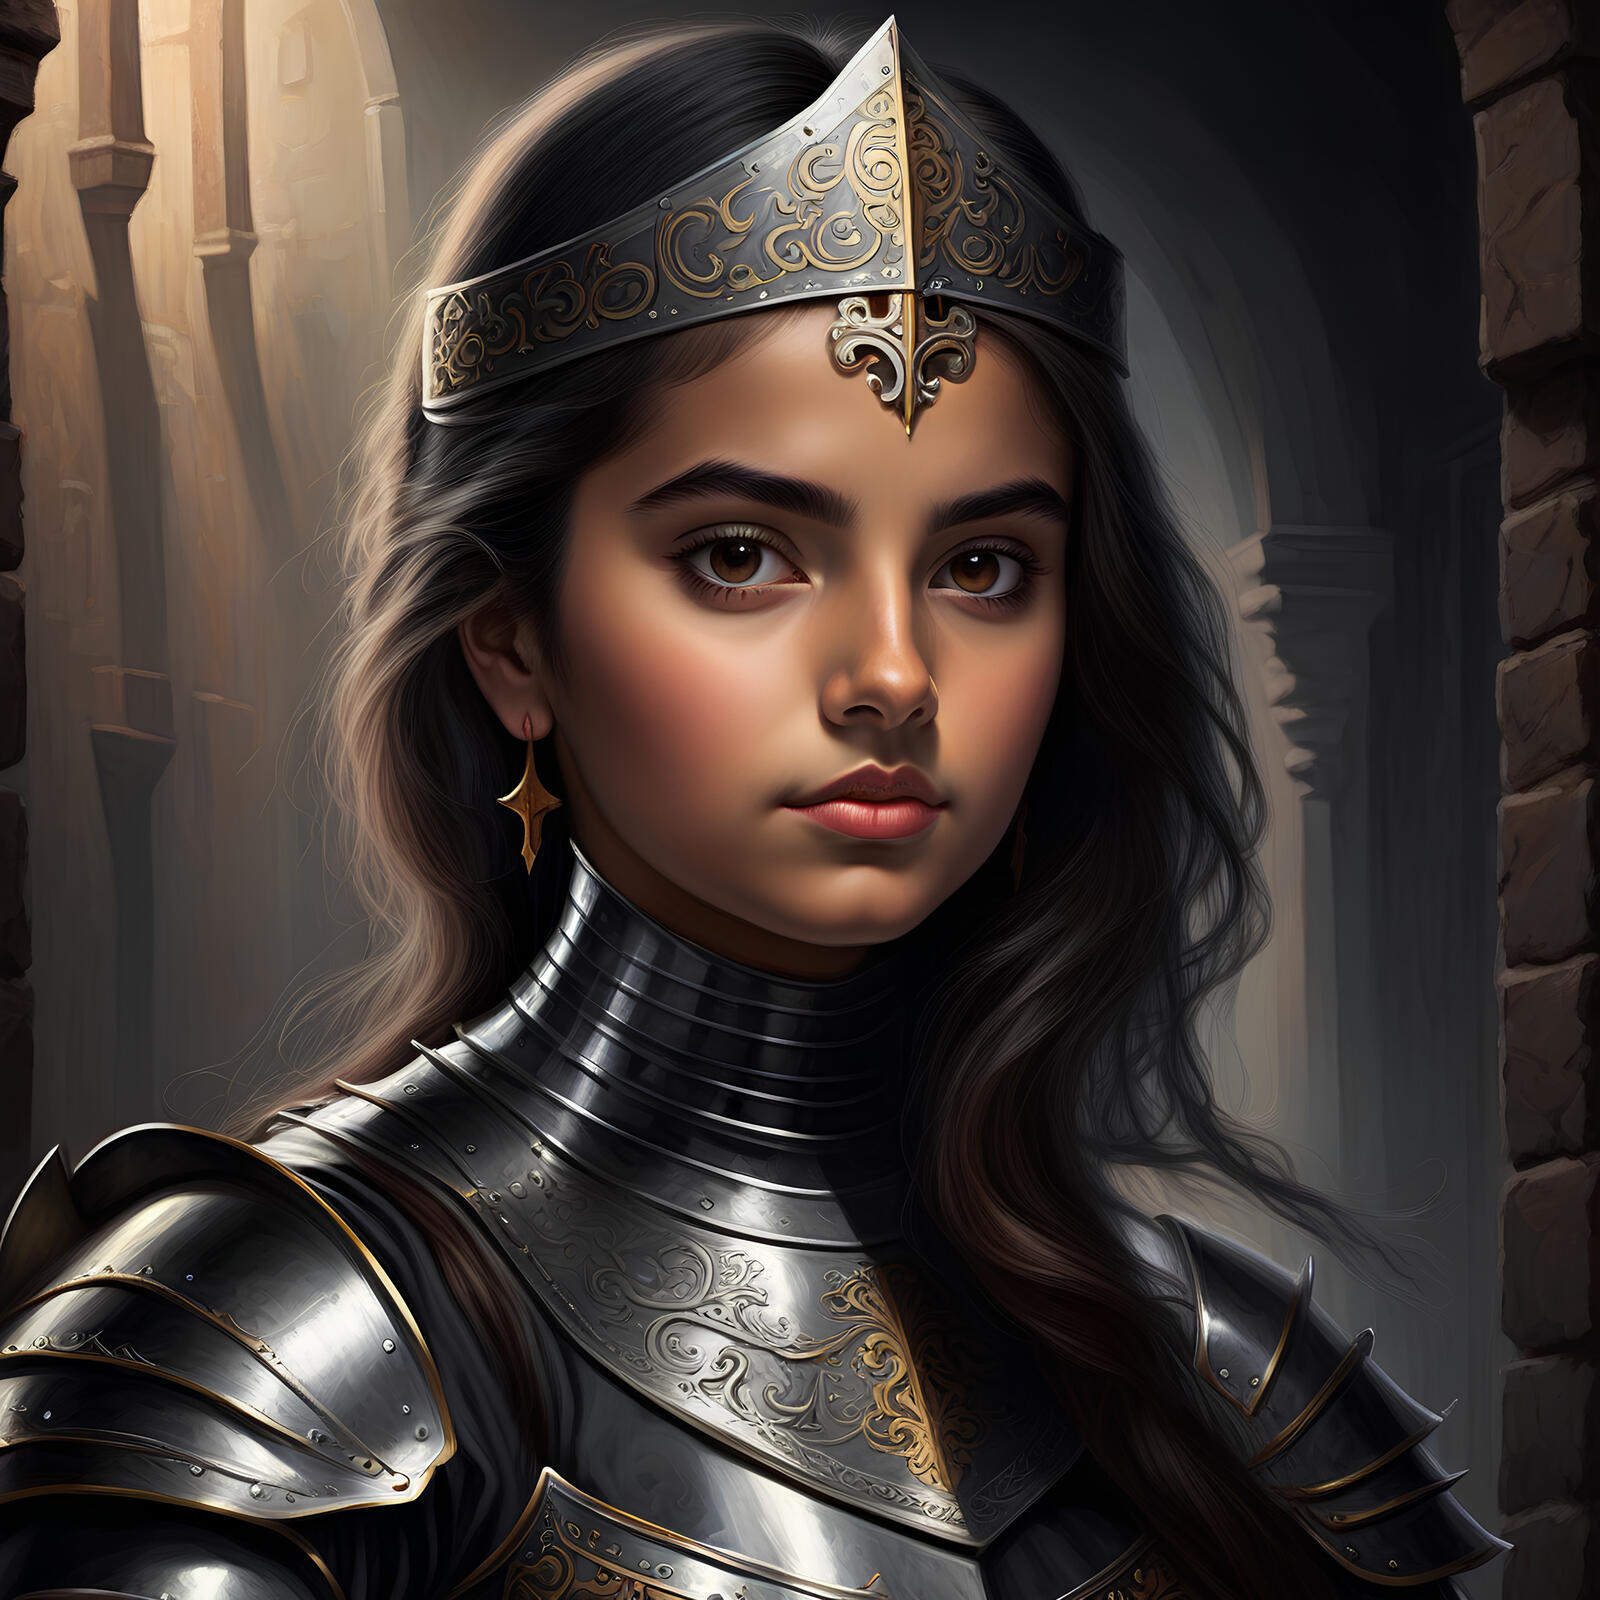 Бесплатное фото Портрет девушки рыцаря